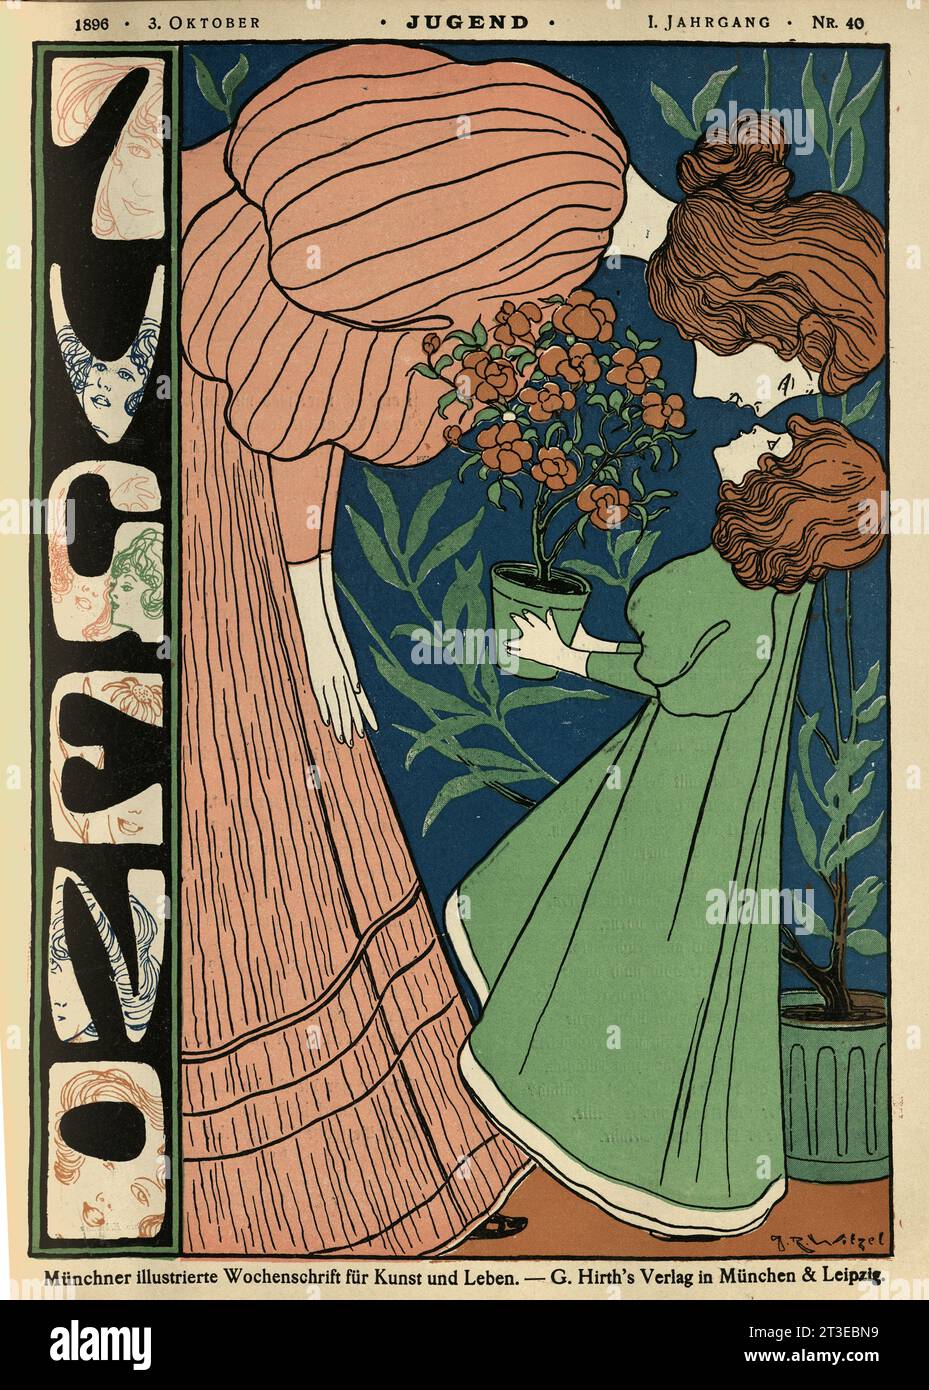 Cover for Jugend, Mother and daughter, Rose plant, Jugendstil, Art Nouveau., German 1890s Stock Photo